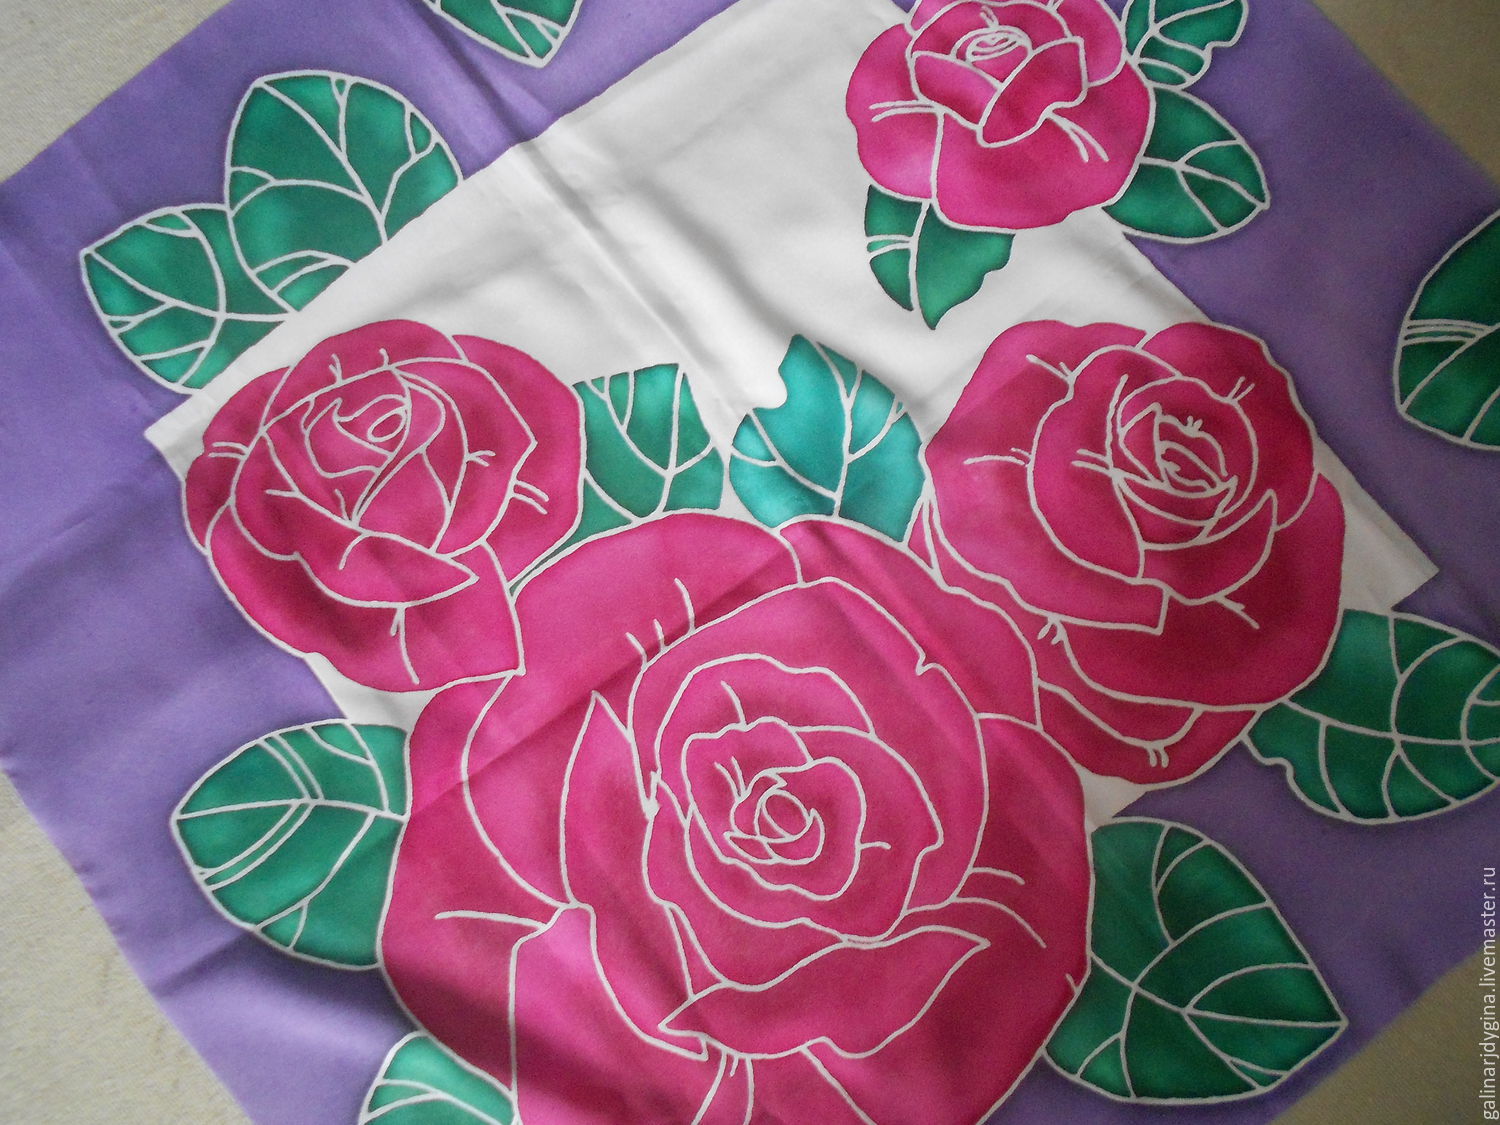 Вышивка на платке с розой